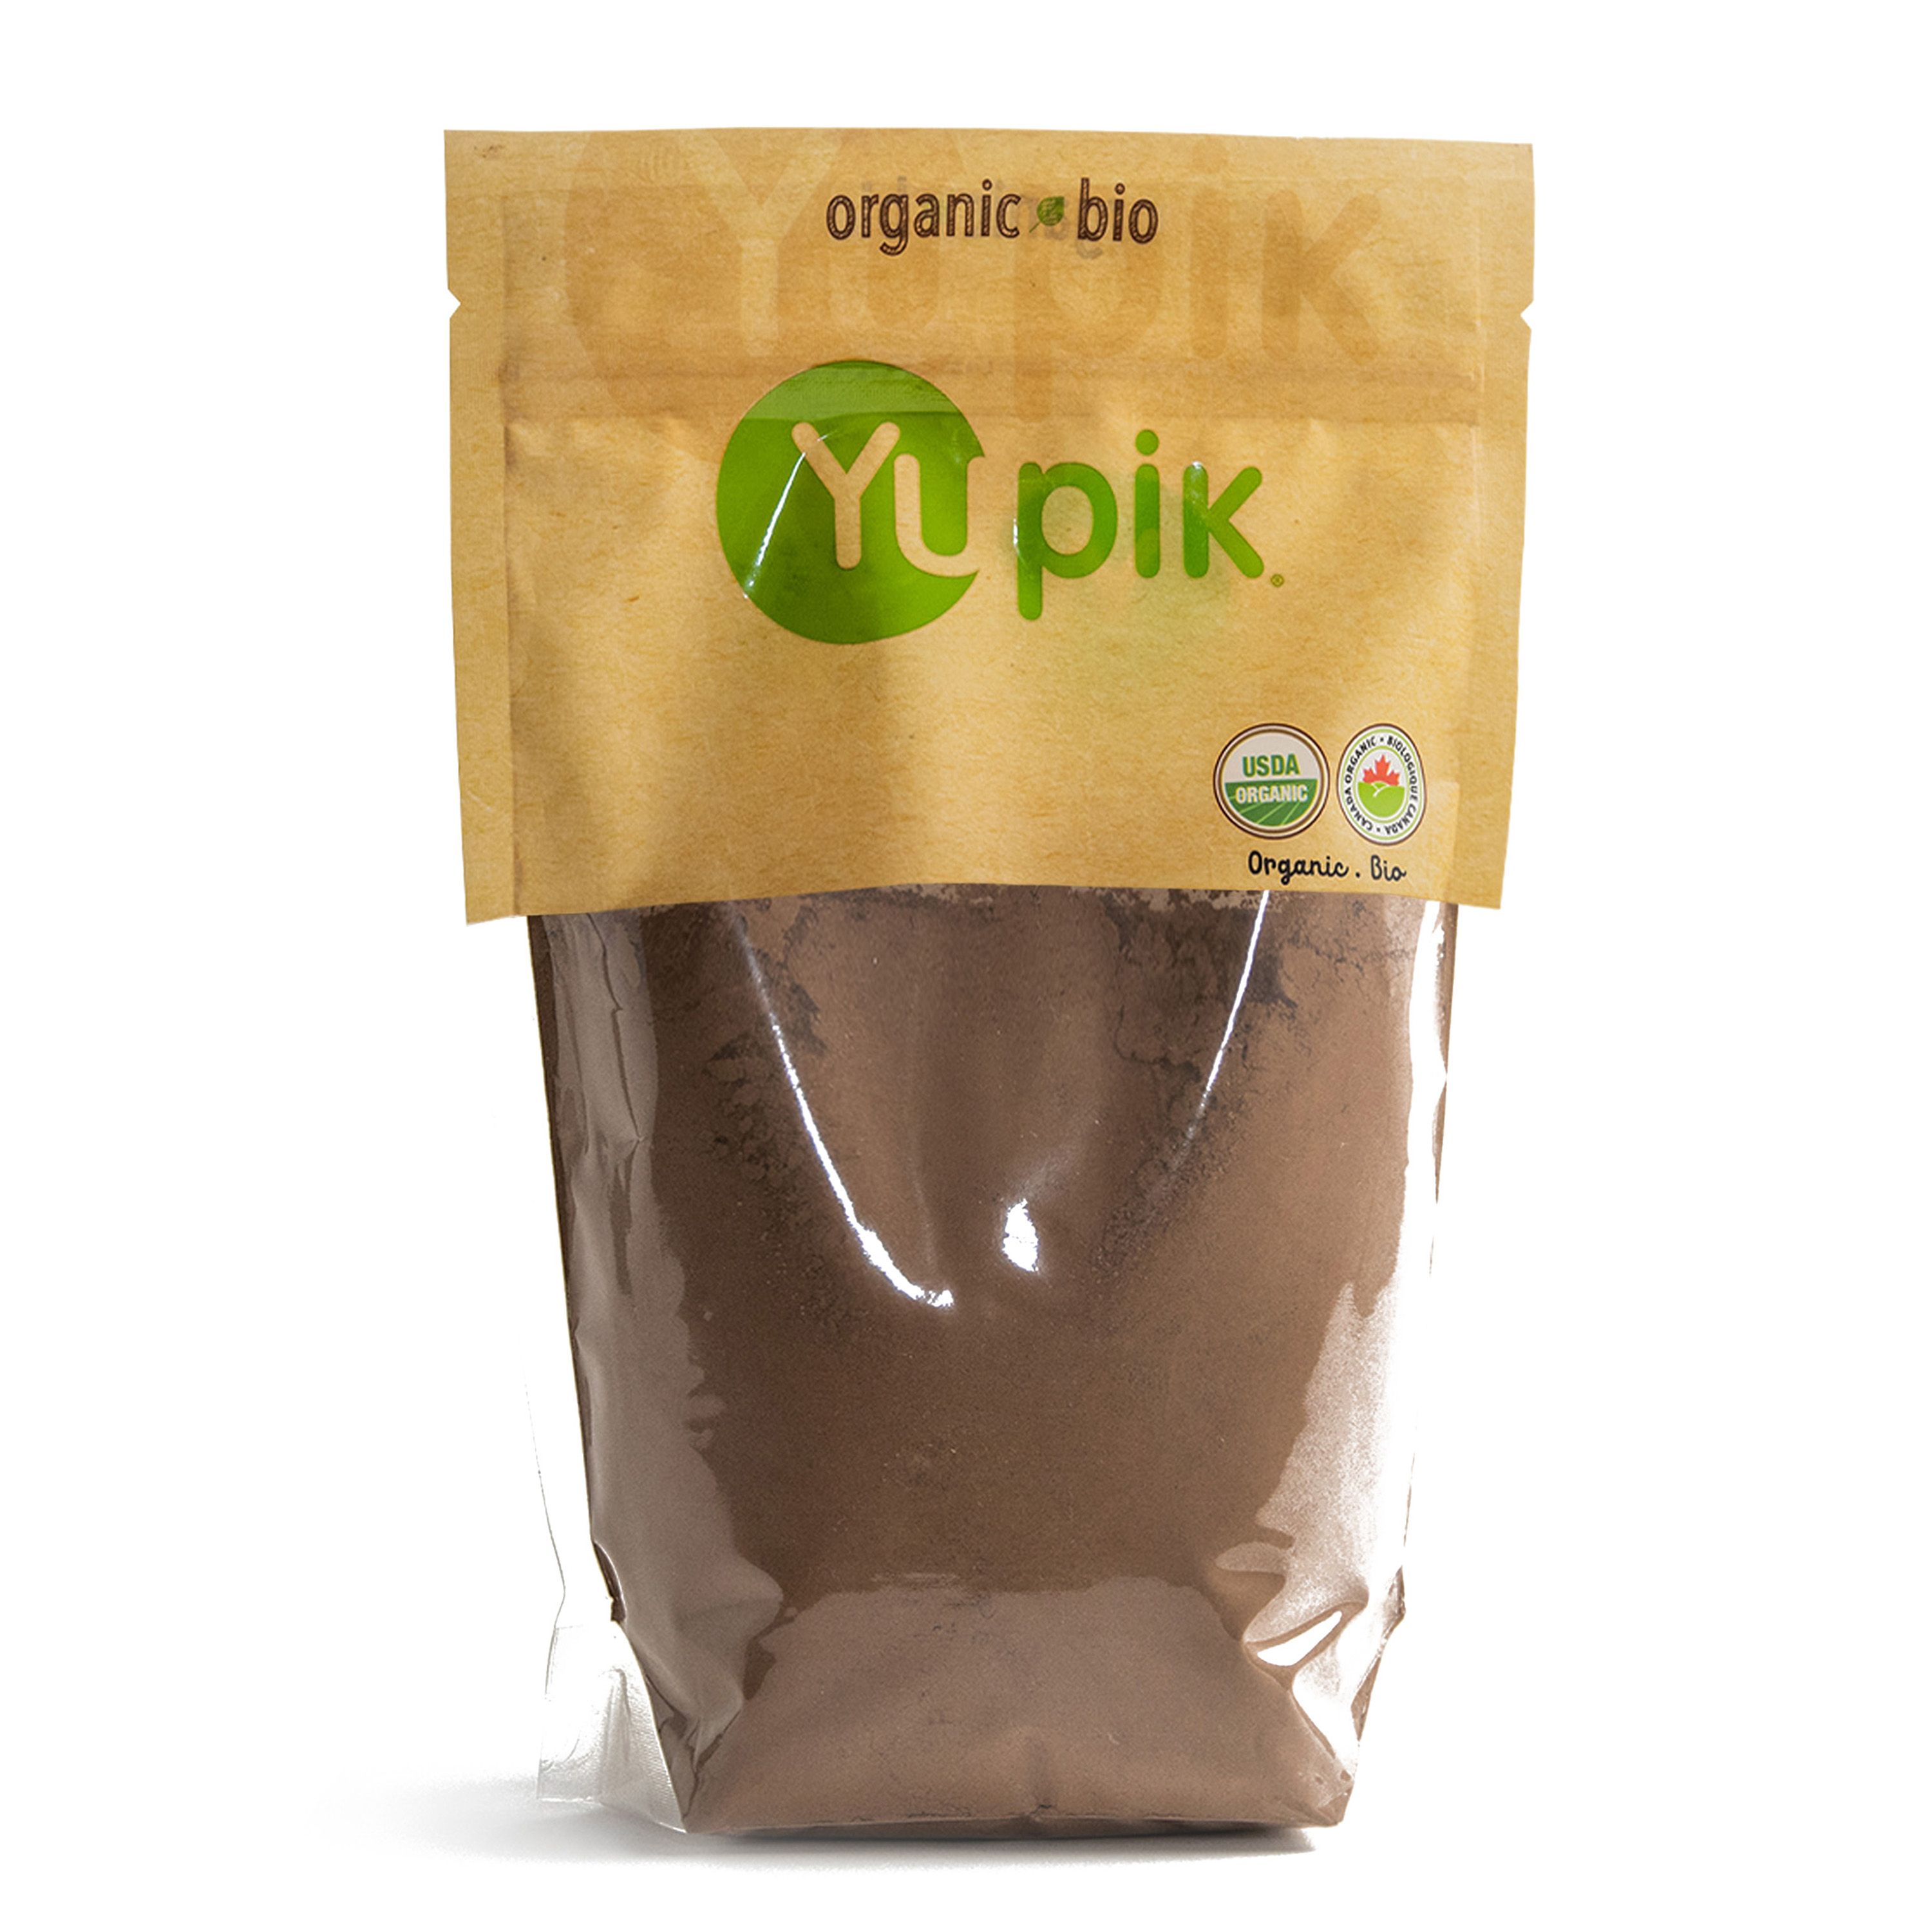 Organic Cane Sugar, Organic alkaline cocoa powder, Potassium carbonate.